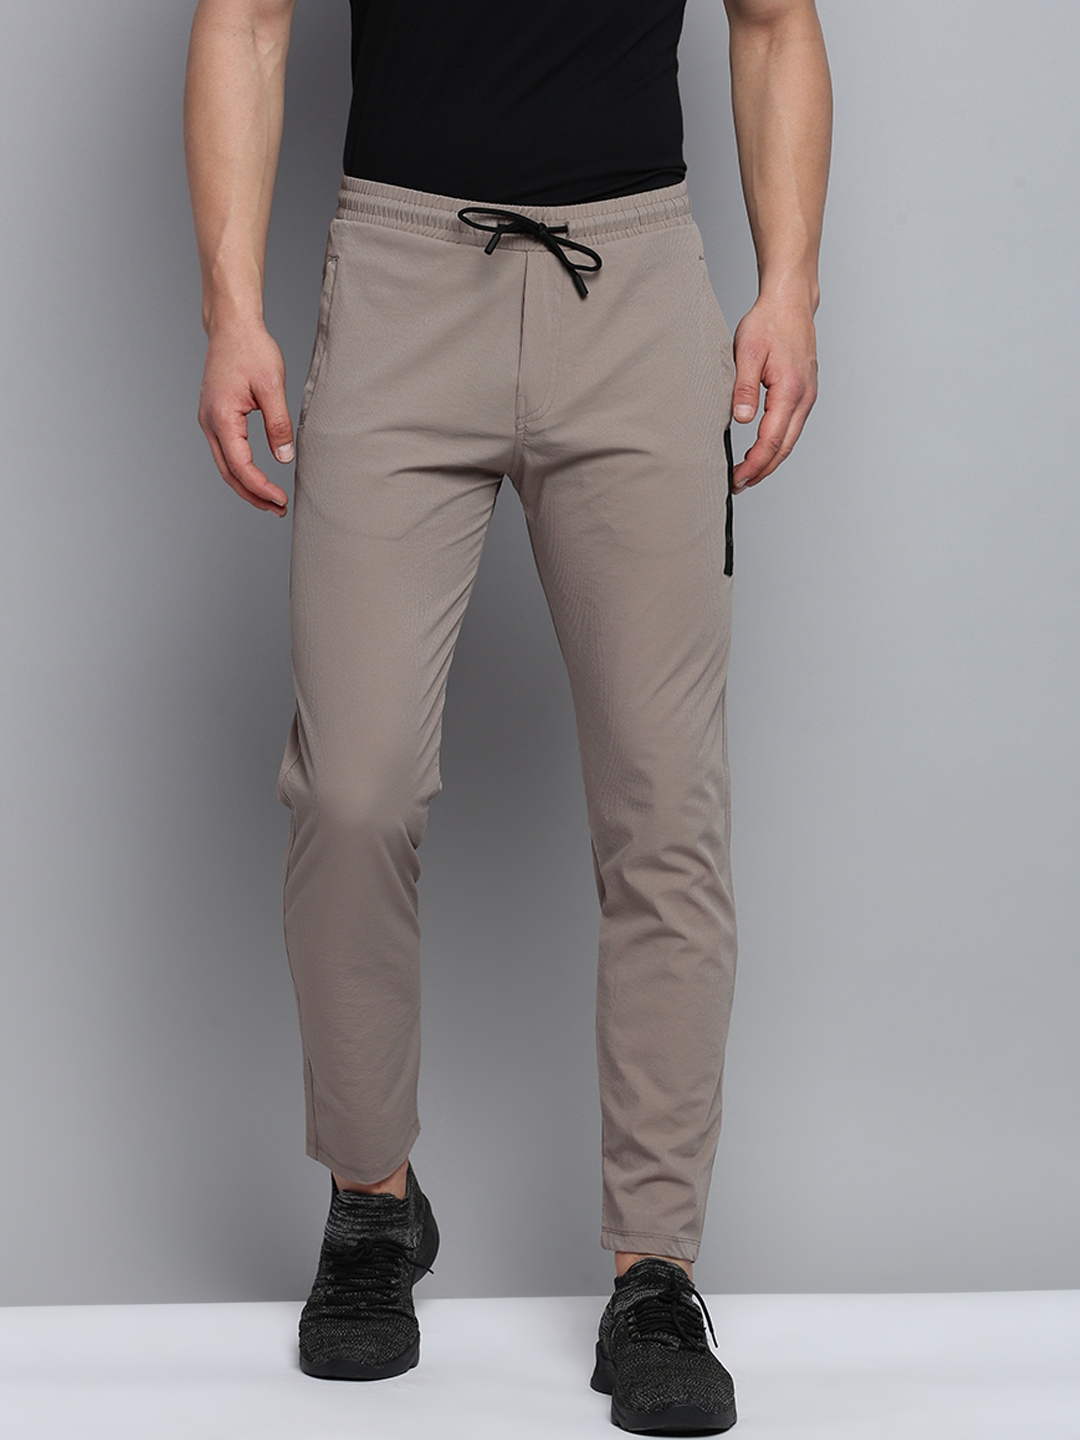 Showoff | SHOWOFF Men's Self Design Grey Regular Fit Regular Track Pant 0